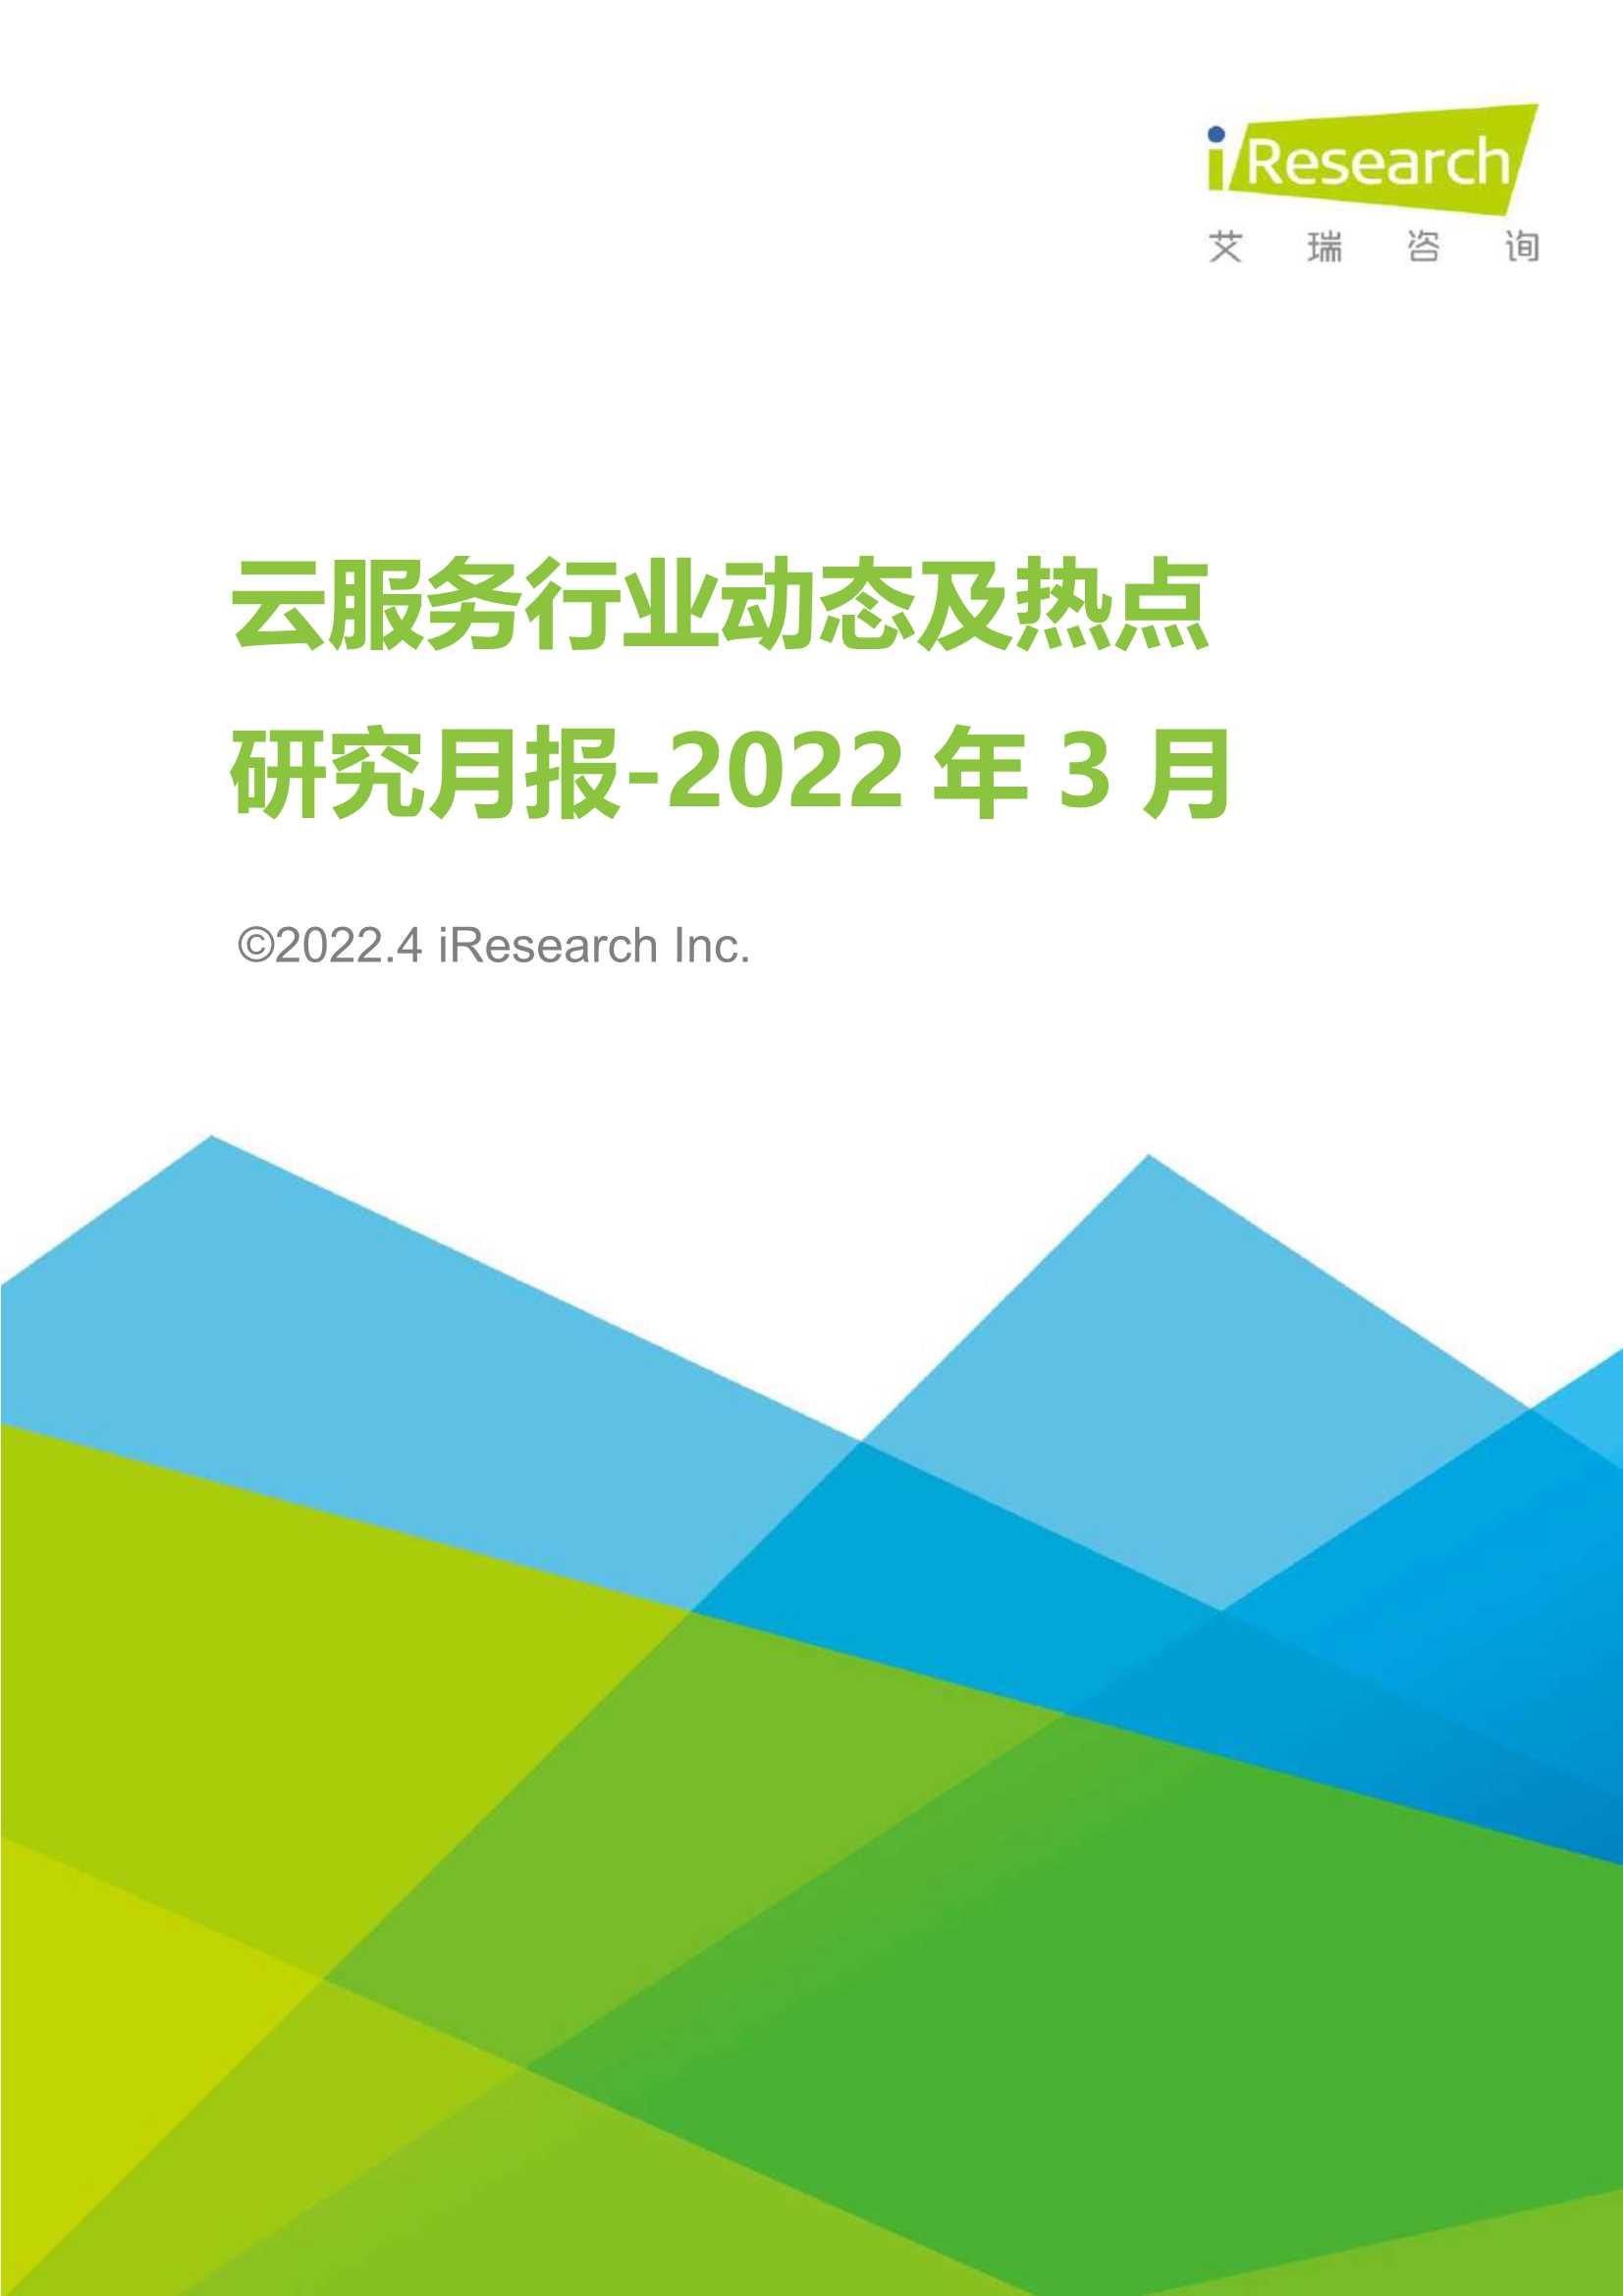 艾瑞咨询-云服务行业动态及热点研究月报 2022年3月-2022.04-38页